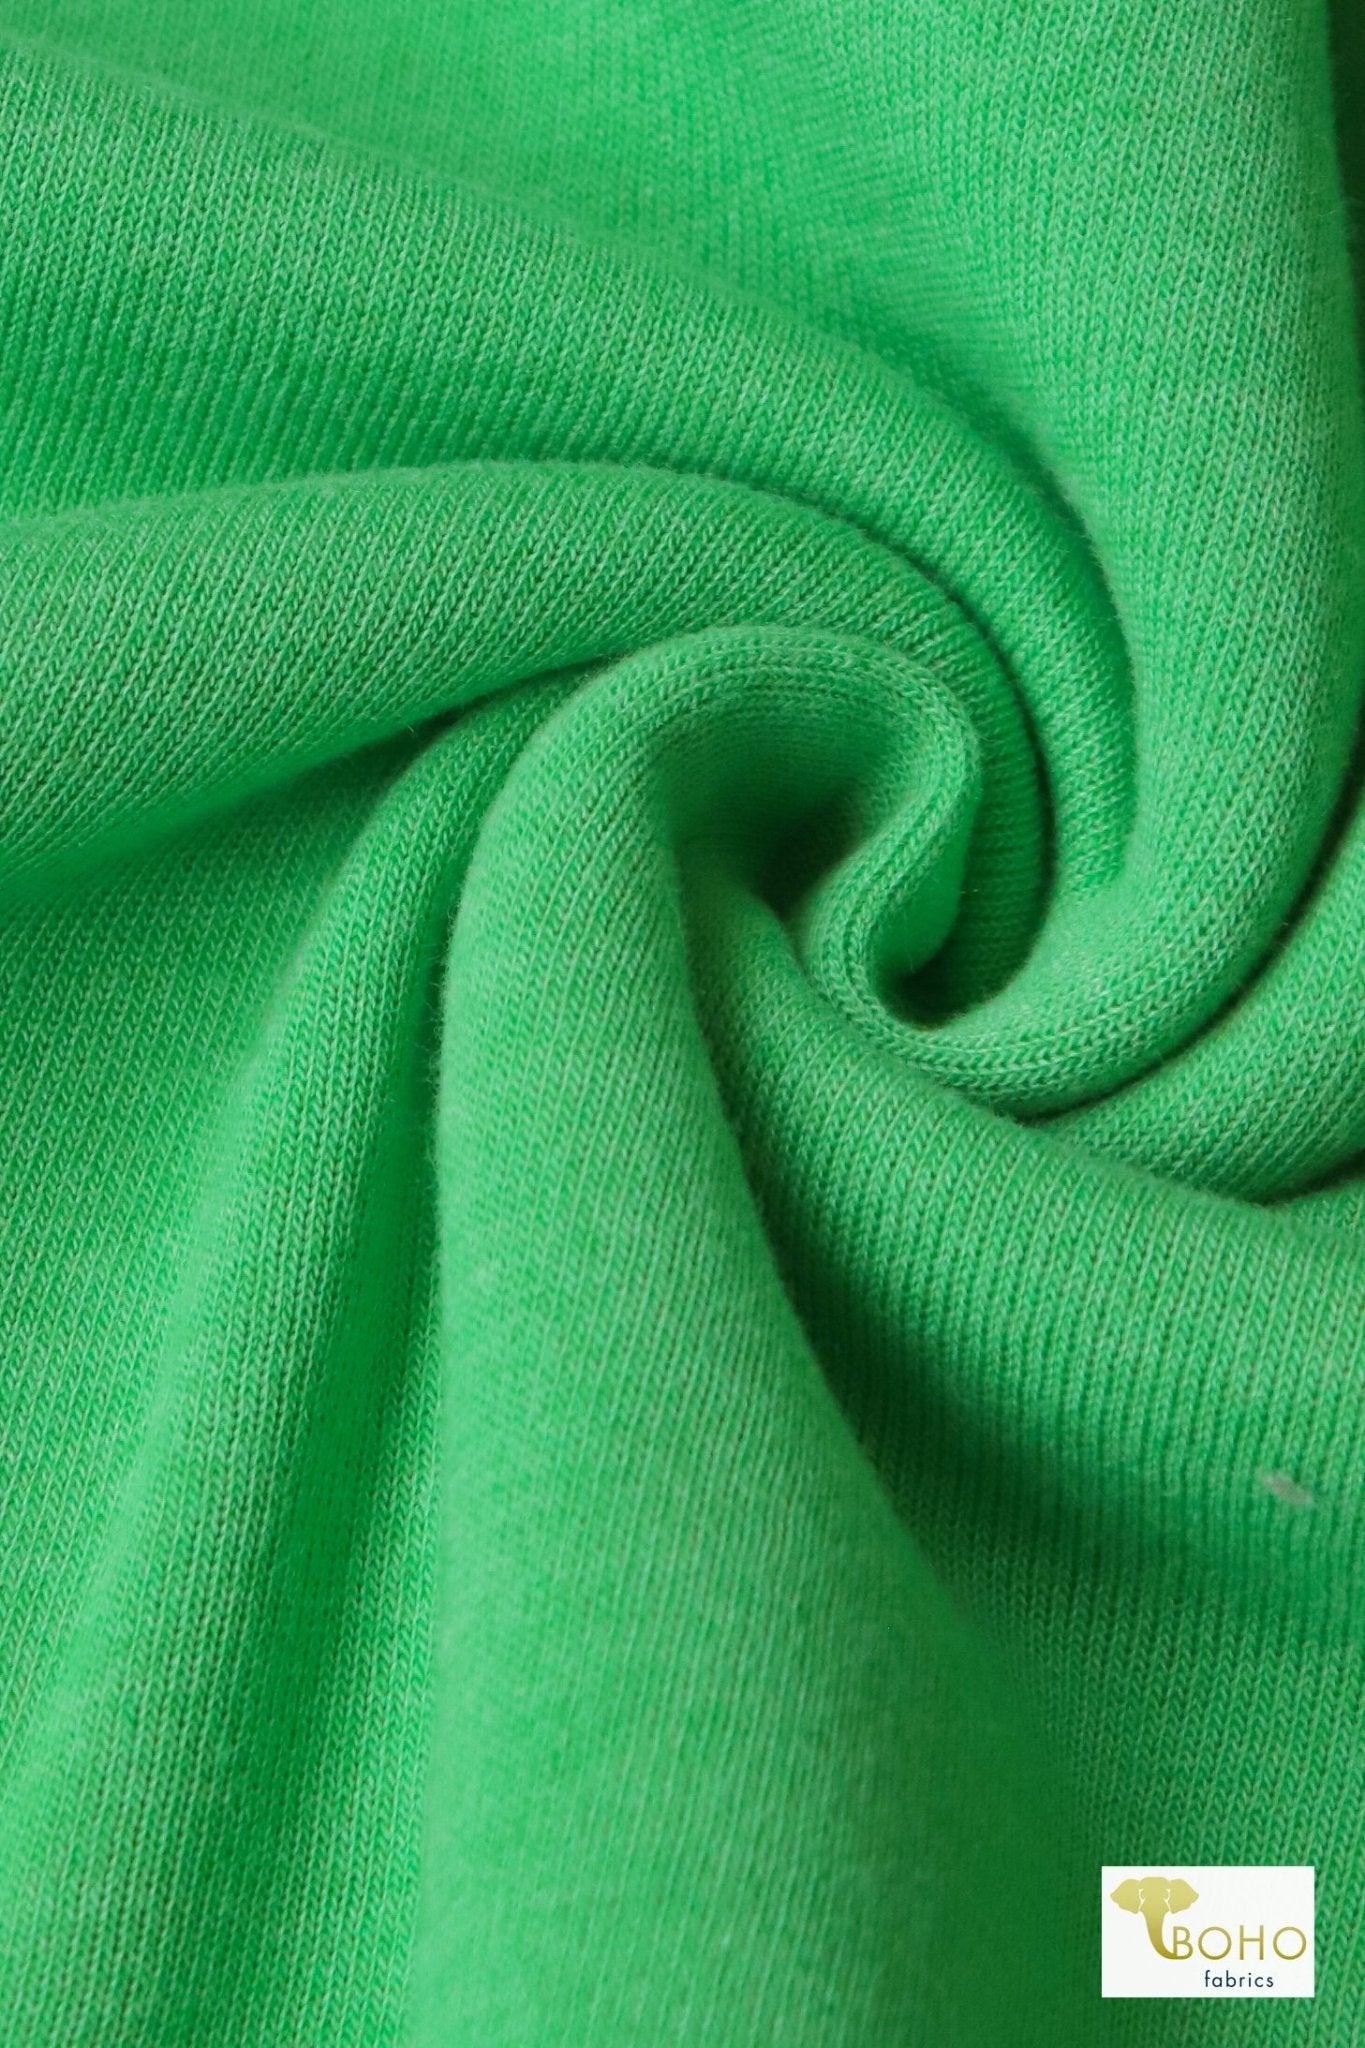 Lime Green, Sweatshirt Fleece. - Boho Fabrics